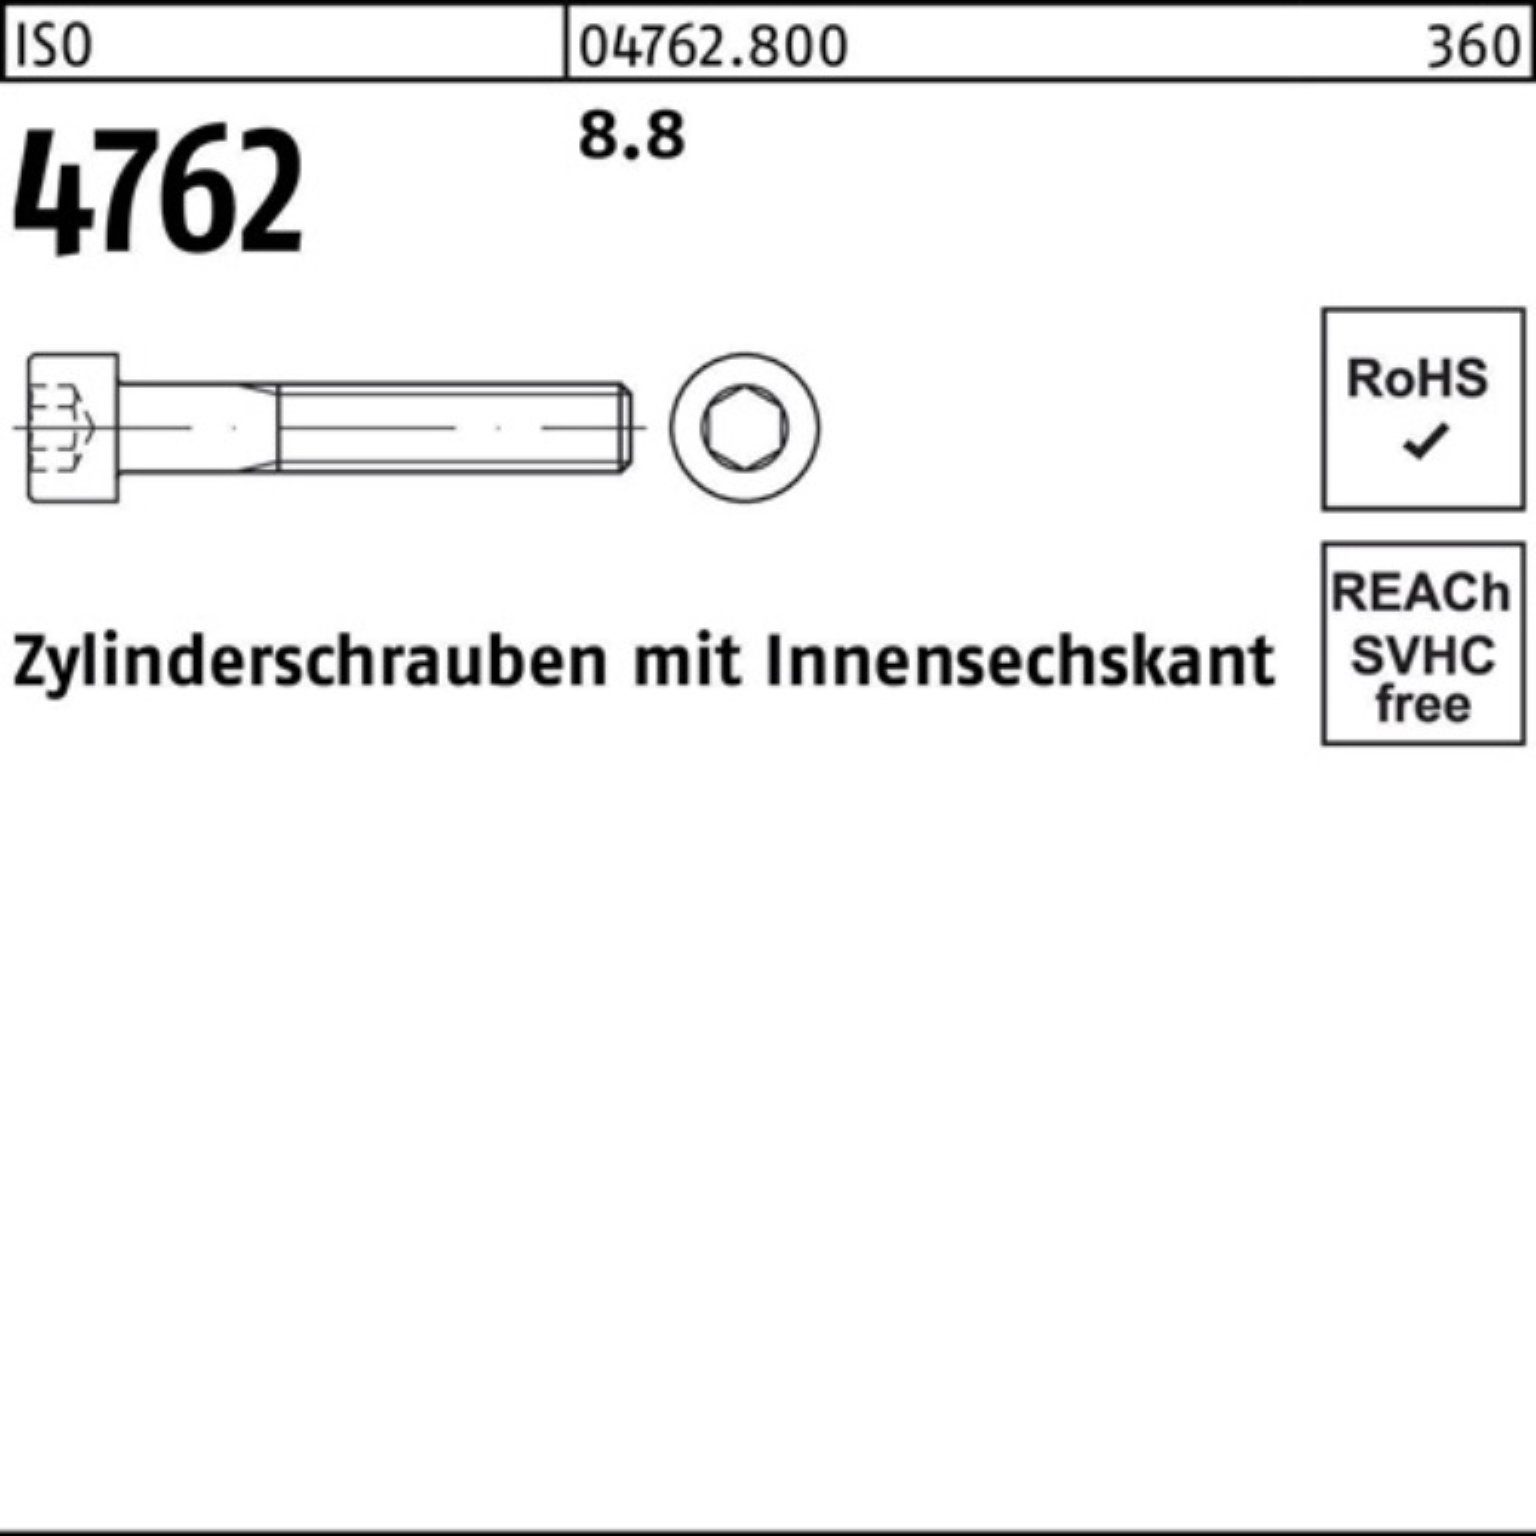 60 100er Zylinderschraube Pack 4762 Zylinderschraube 10 I Innen-6kt M30x 8.8 Stück ISO Reyher